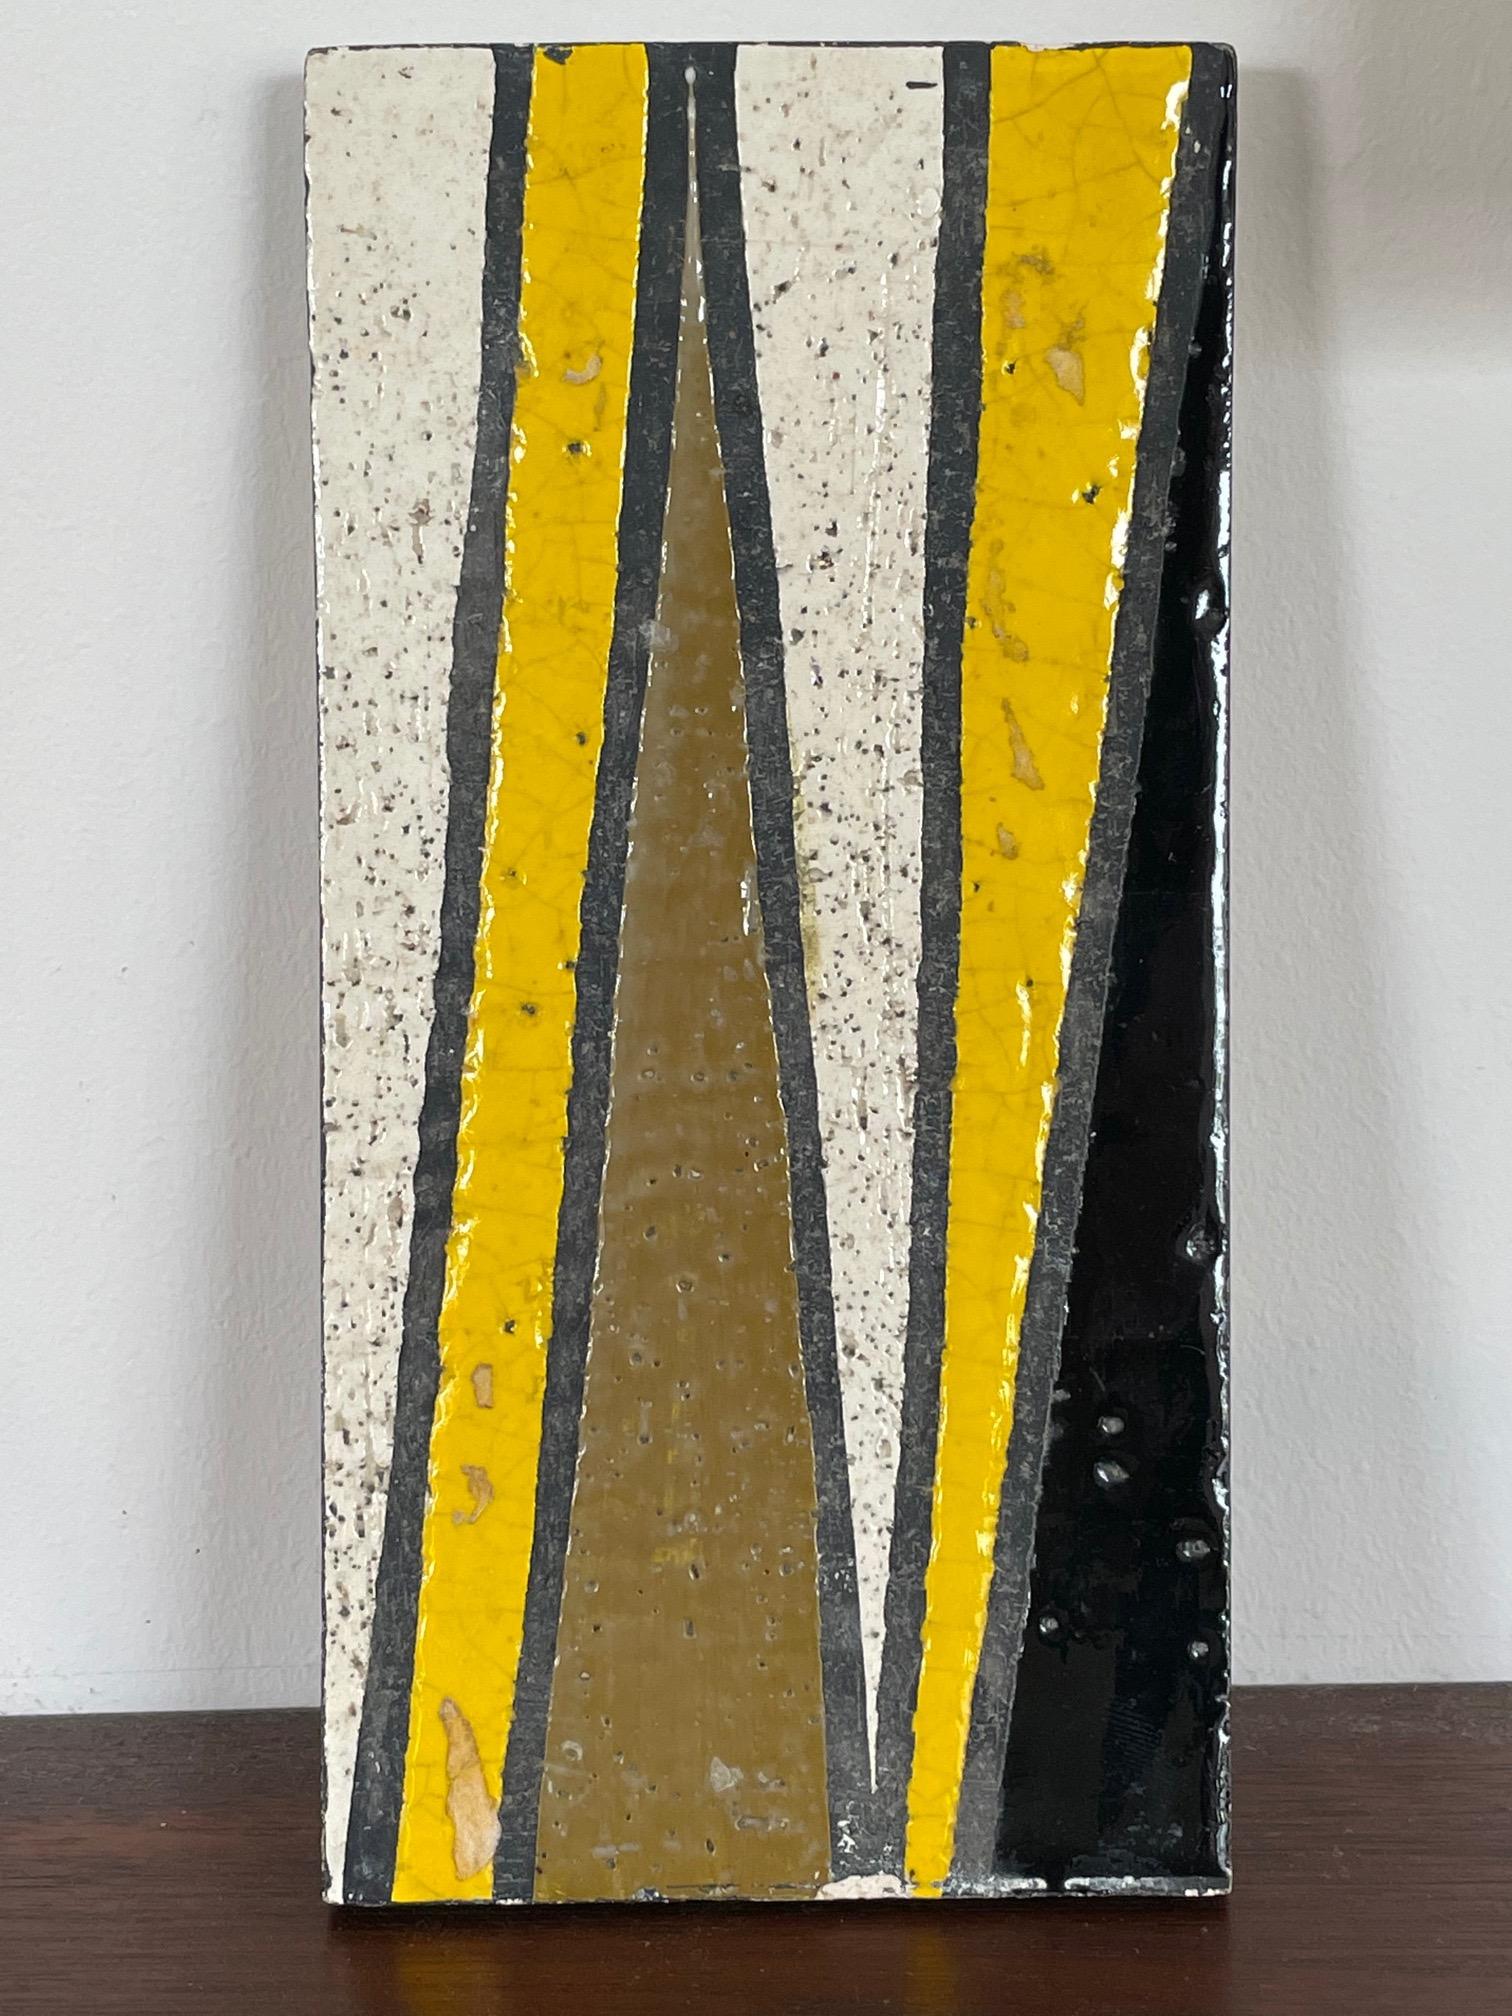 Eine ungewöhnliche Keramikdose von Bitossi für Rosenthal Netter, Italien, ca. 1960er Jahre, signiert. Geometrisches Design, schön verziert in gelb, braun, schwarz.